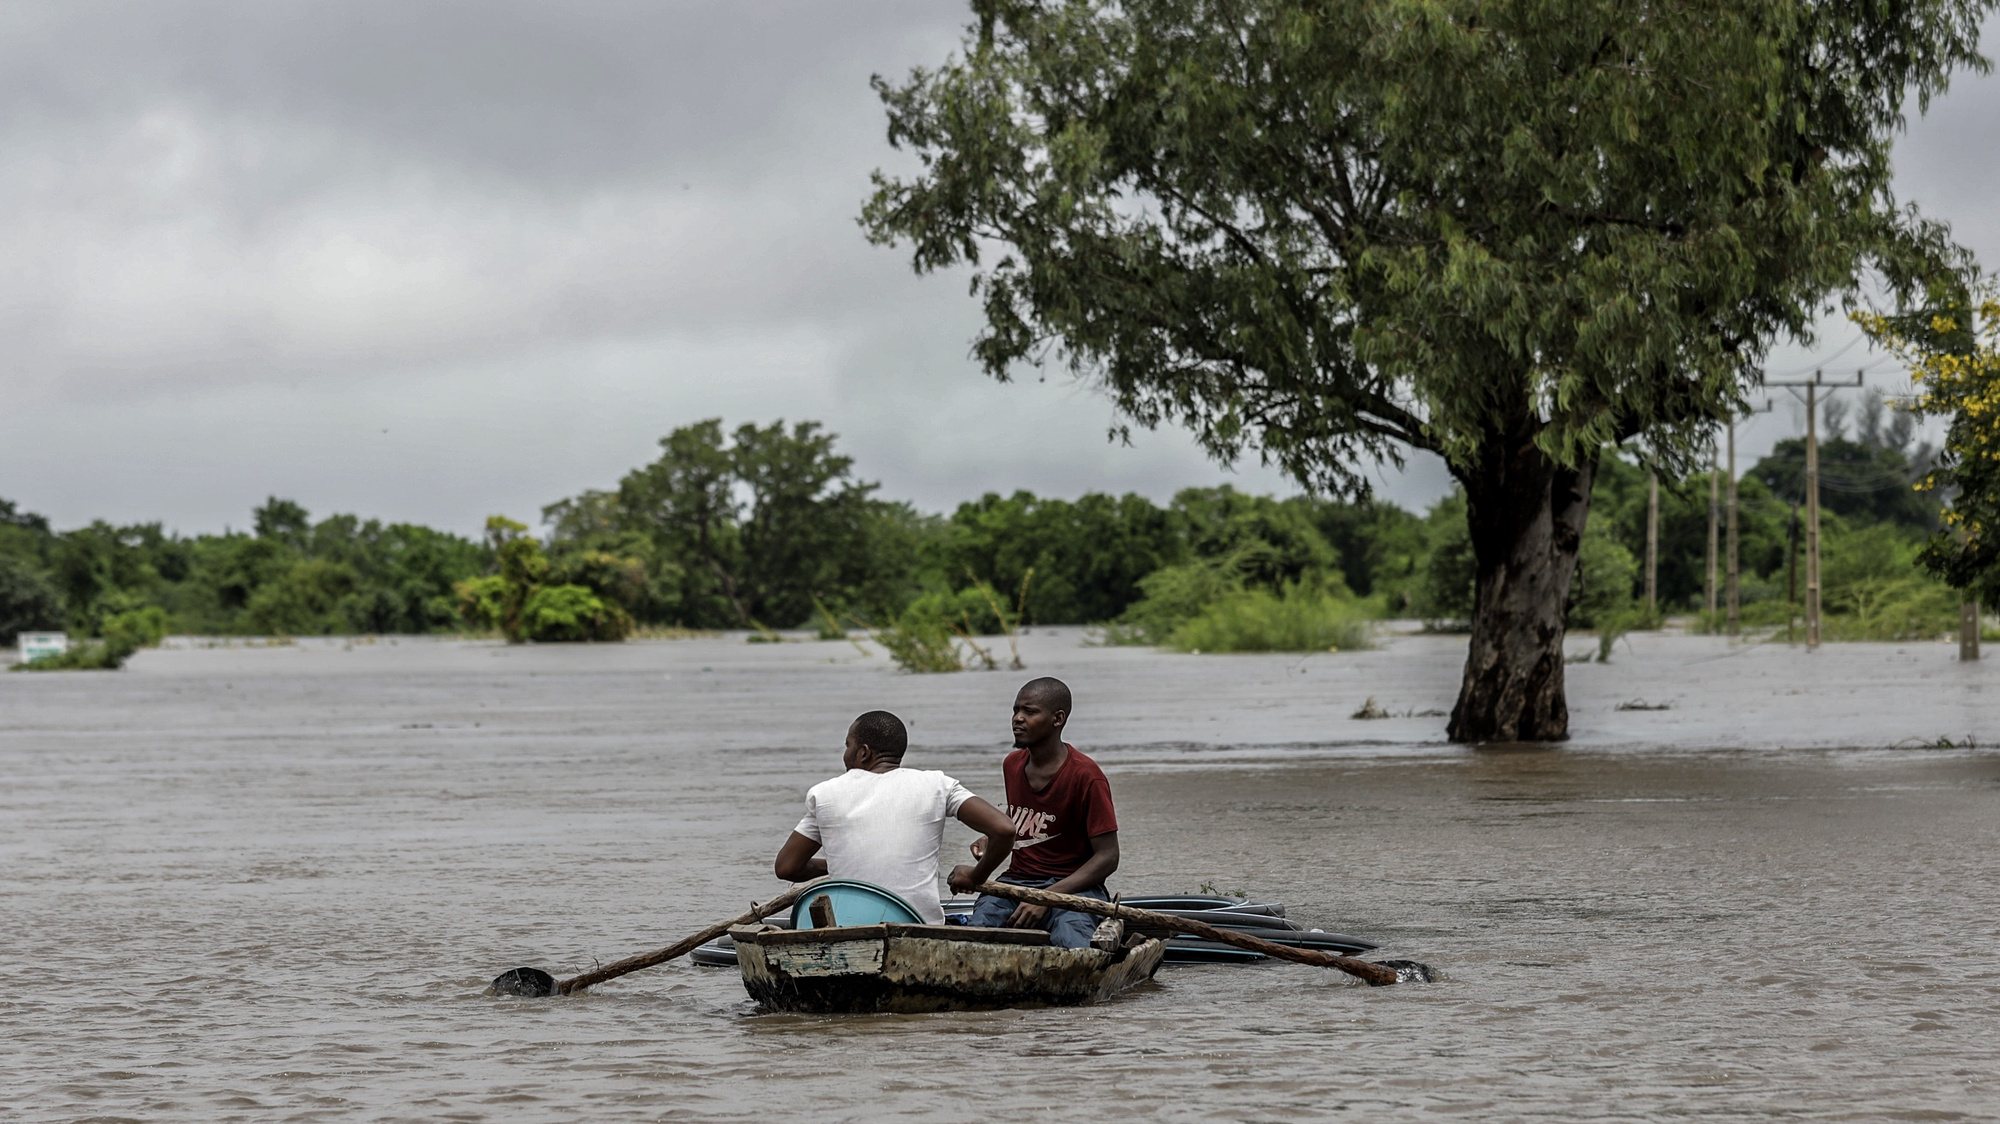 Populares numa embarcação numa área inundada após chuvas desde 07 de Fevereiro em Maputo, Moçambique, 10 de fevereiro de 2023. A chuva intensa que cai na região de Maputo desde quarta-feira já afetou cerca de 14.000 pessoas e desalojou 180 famílias, de acordo com um balanço oficial divulgado hoje pelas autoridades, que mantêm em quatro o número de óbitos. LUÍSA NHANTUMBO/LUSA